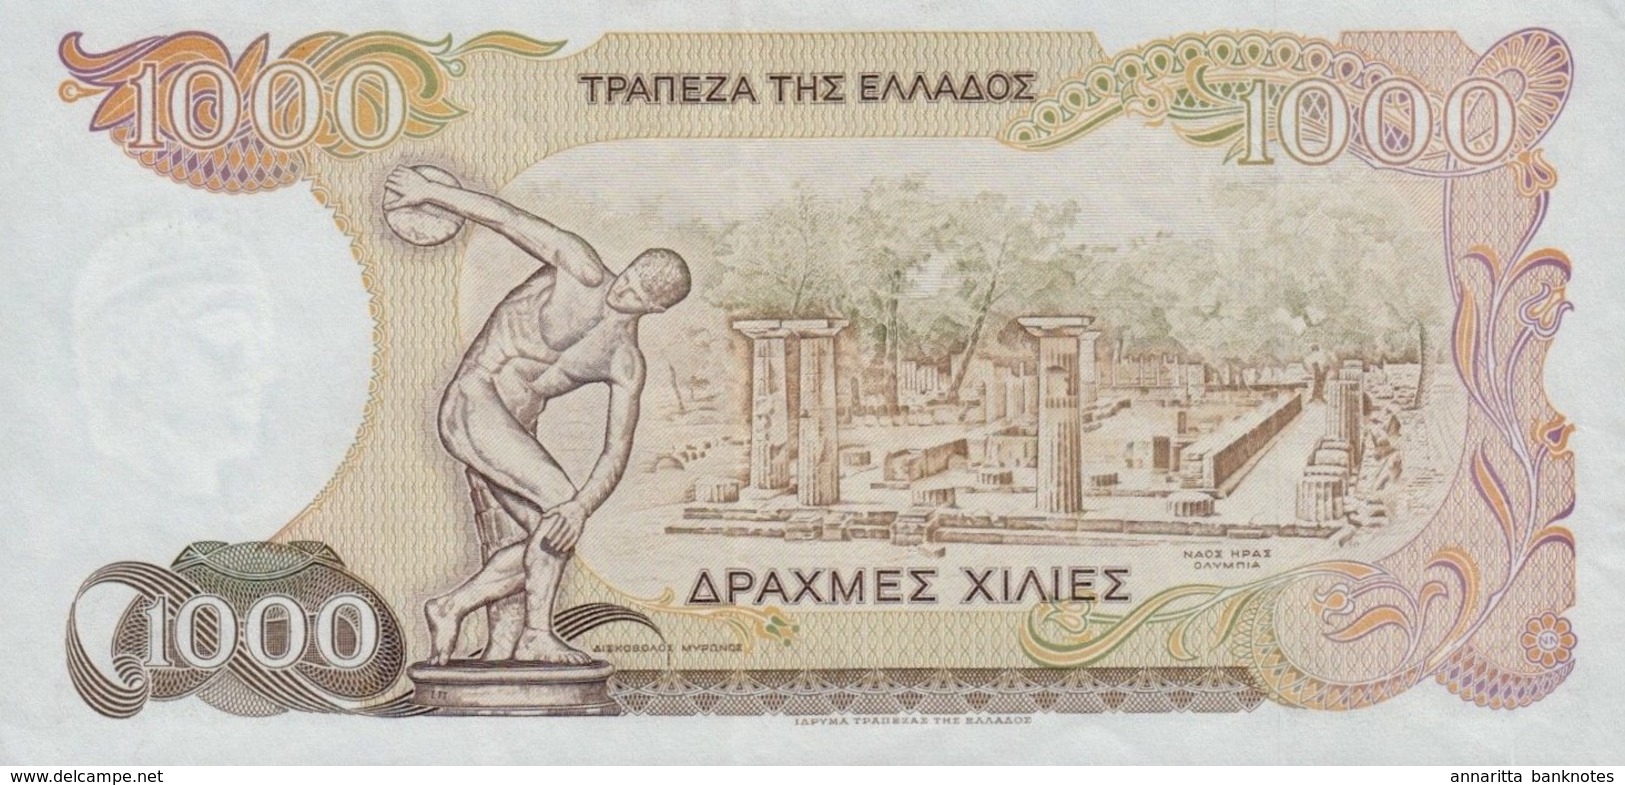 GREECE 1000 ΔΡΑΧΜΕΣ (DRACHMAS) 1987 P-202 XF  [GR202] - Greece